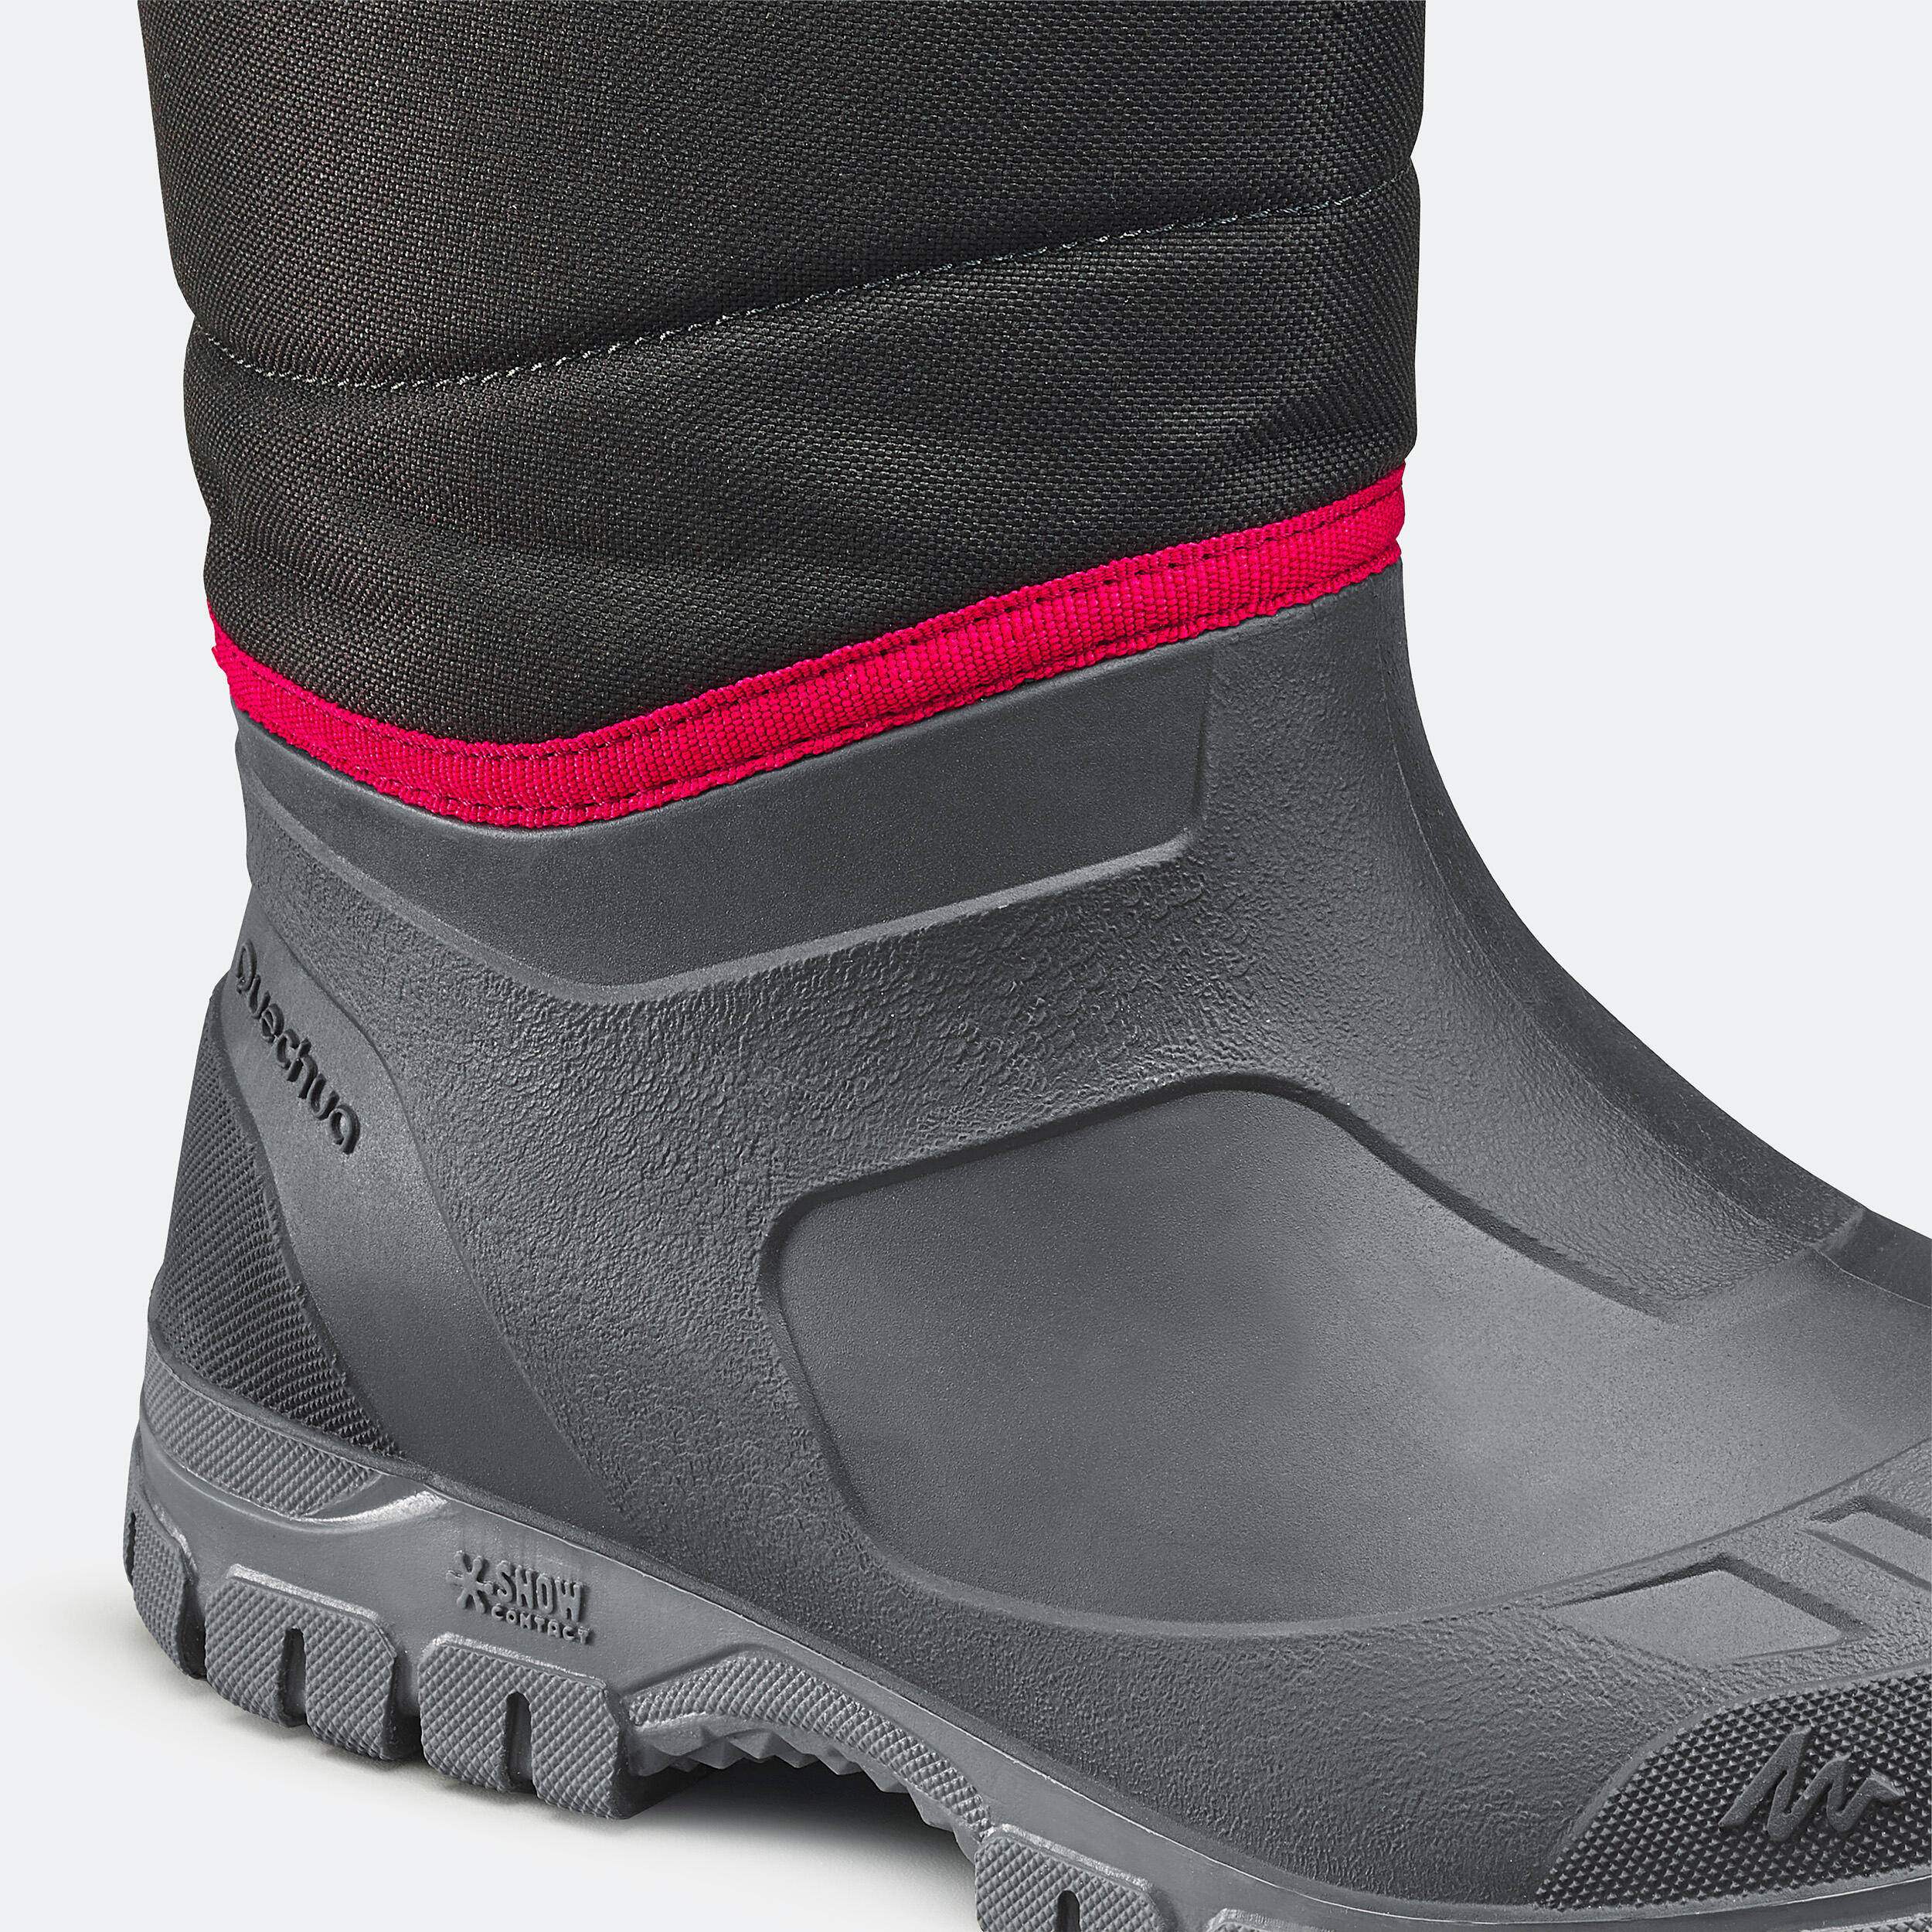 Men's Winter Boots - SH 100 Black - Carbon grey - Quechua - Decathlon